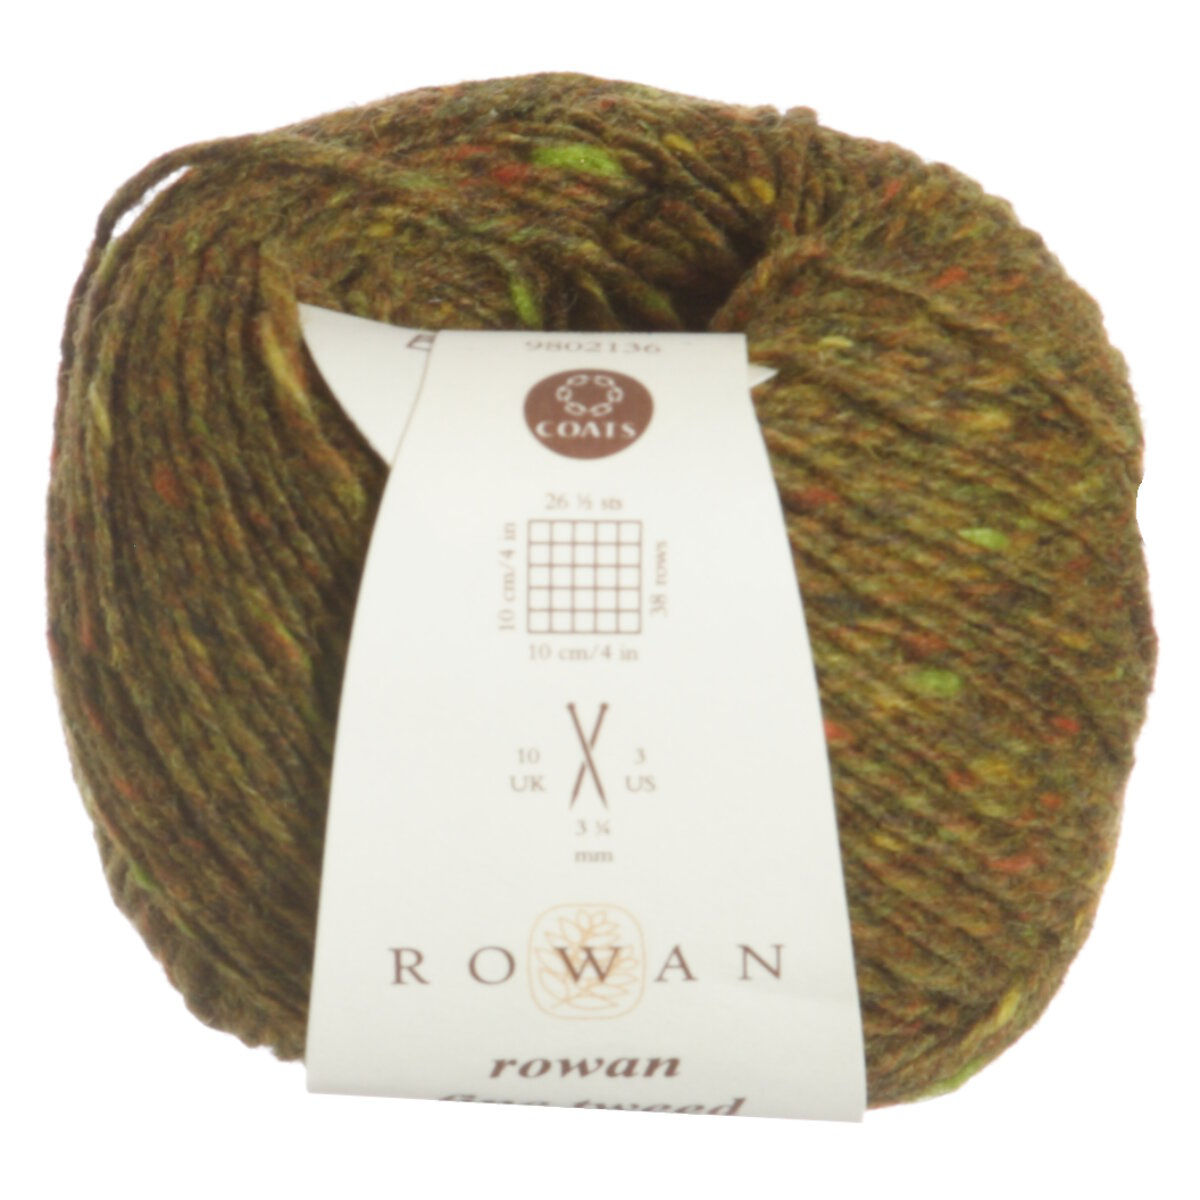 Fine Tweed Yarn - 372 Reeth at Beans Wool